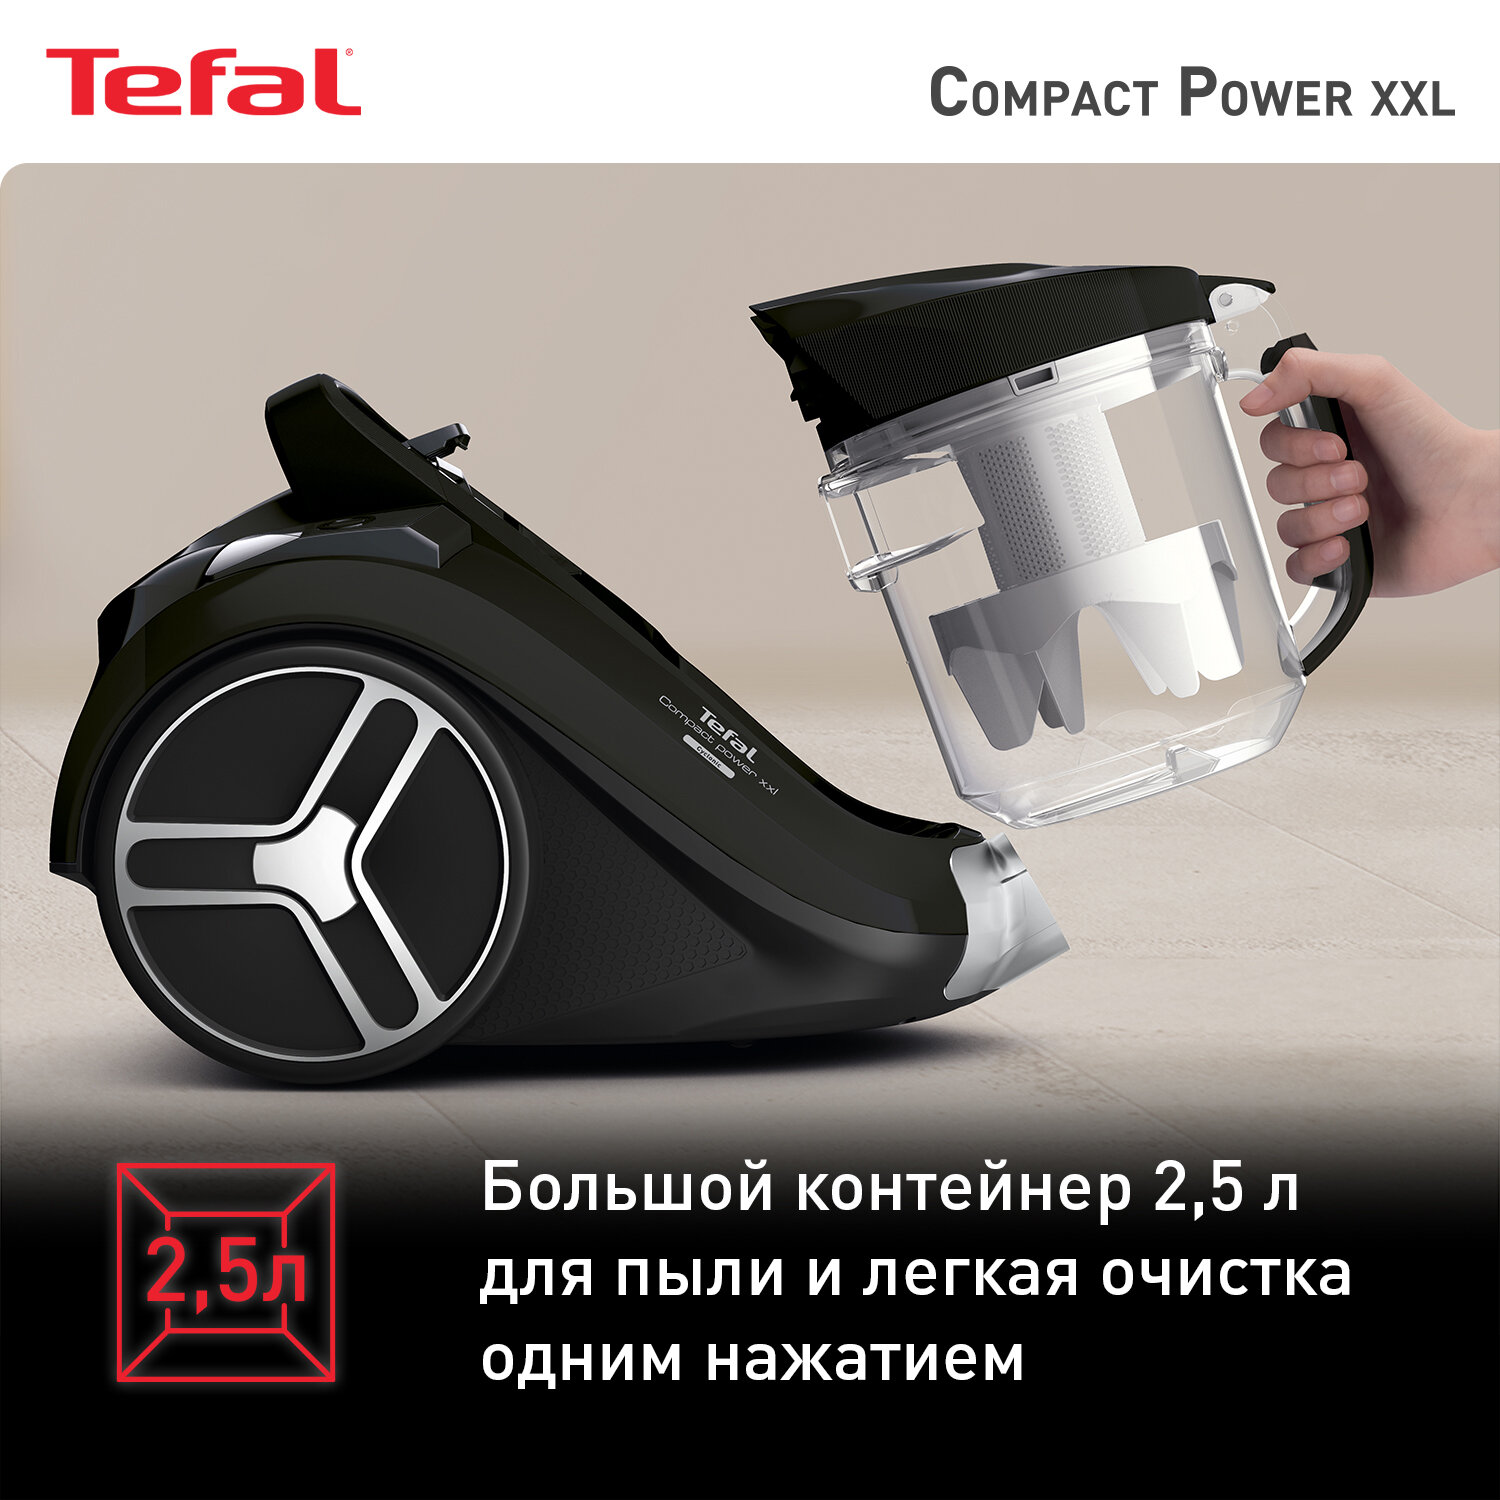 Пылесос Tefal Compact Power XXL TW4825EA, 550Вт, черный [7211004537] - фото №14